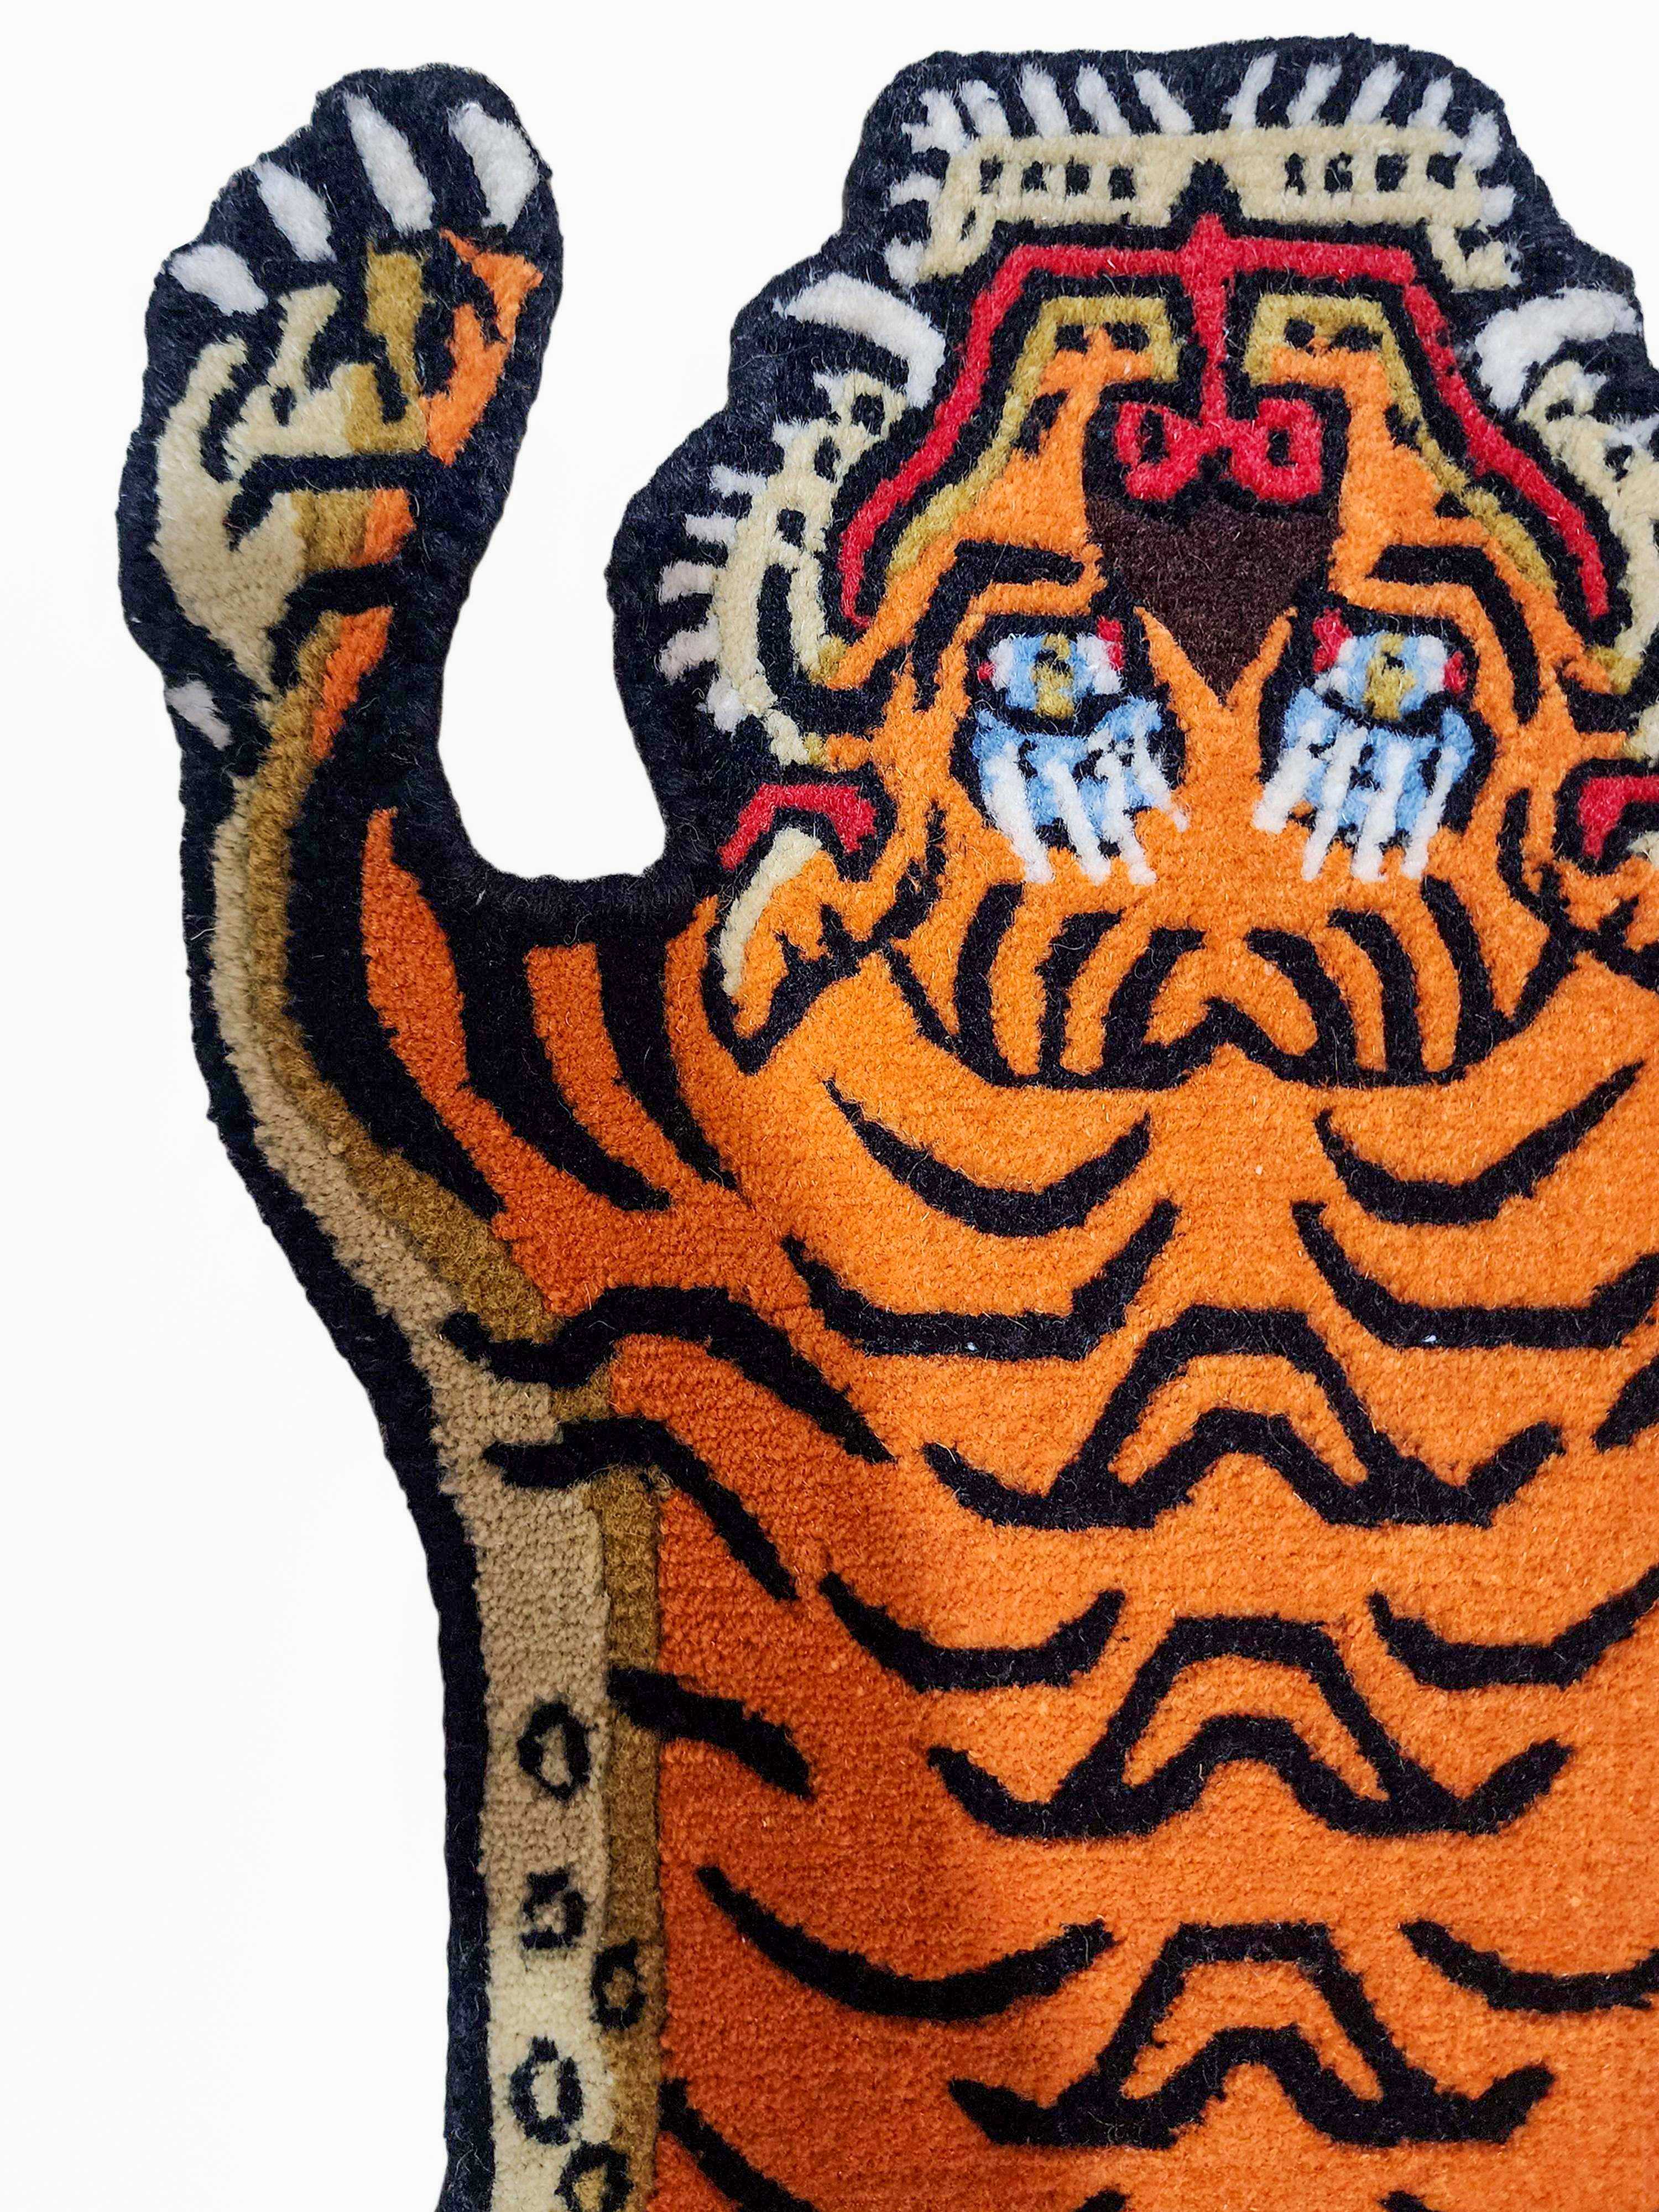 tiger Design Rug/carpet, Handwoven In Nepal, Orange Color, Baby Size